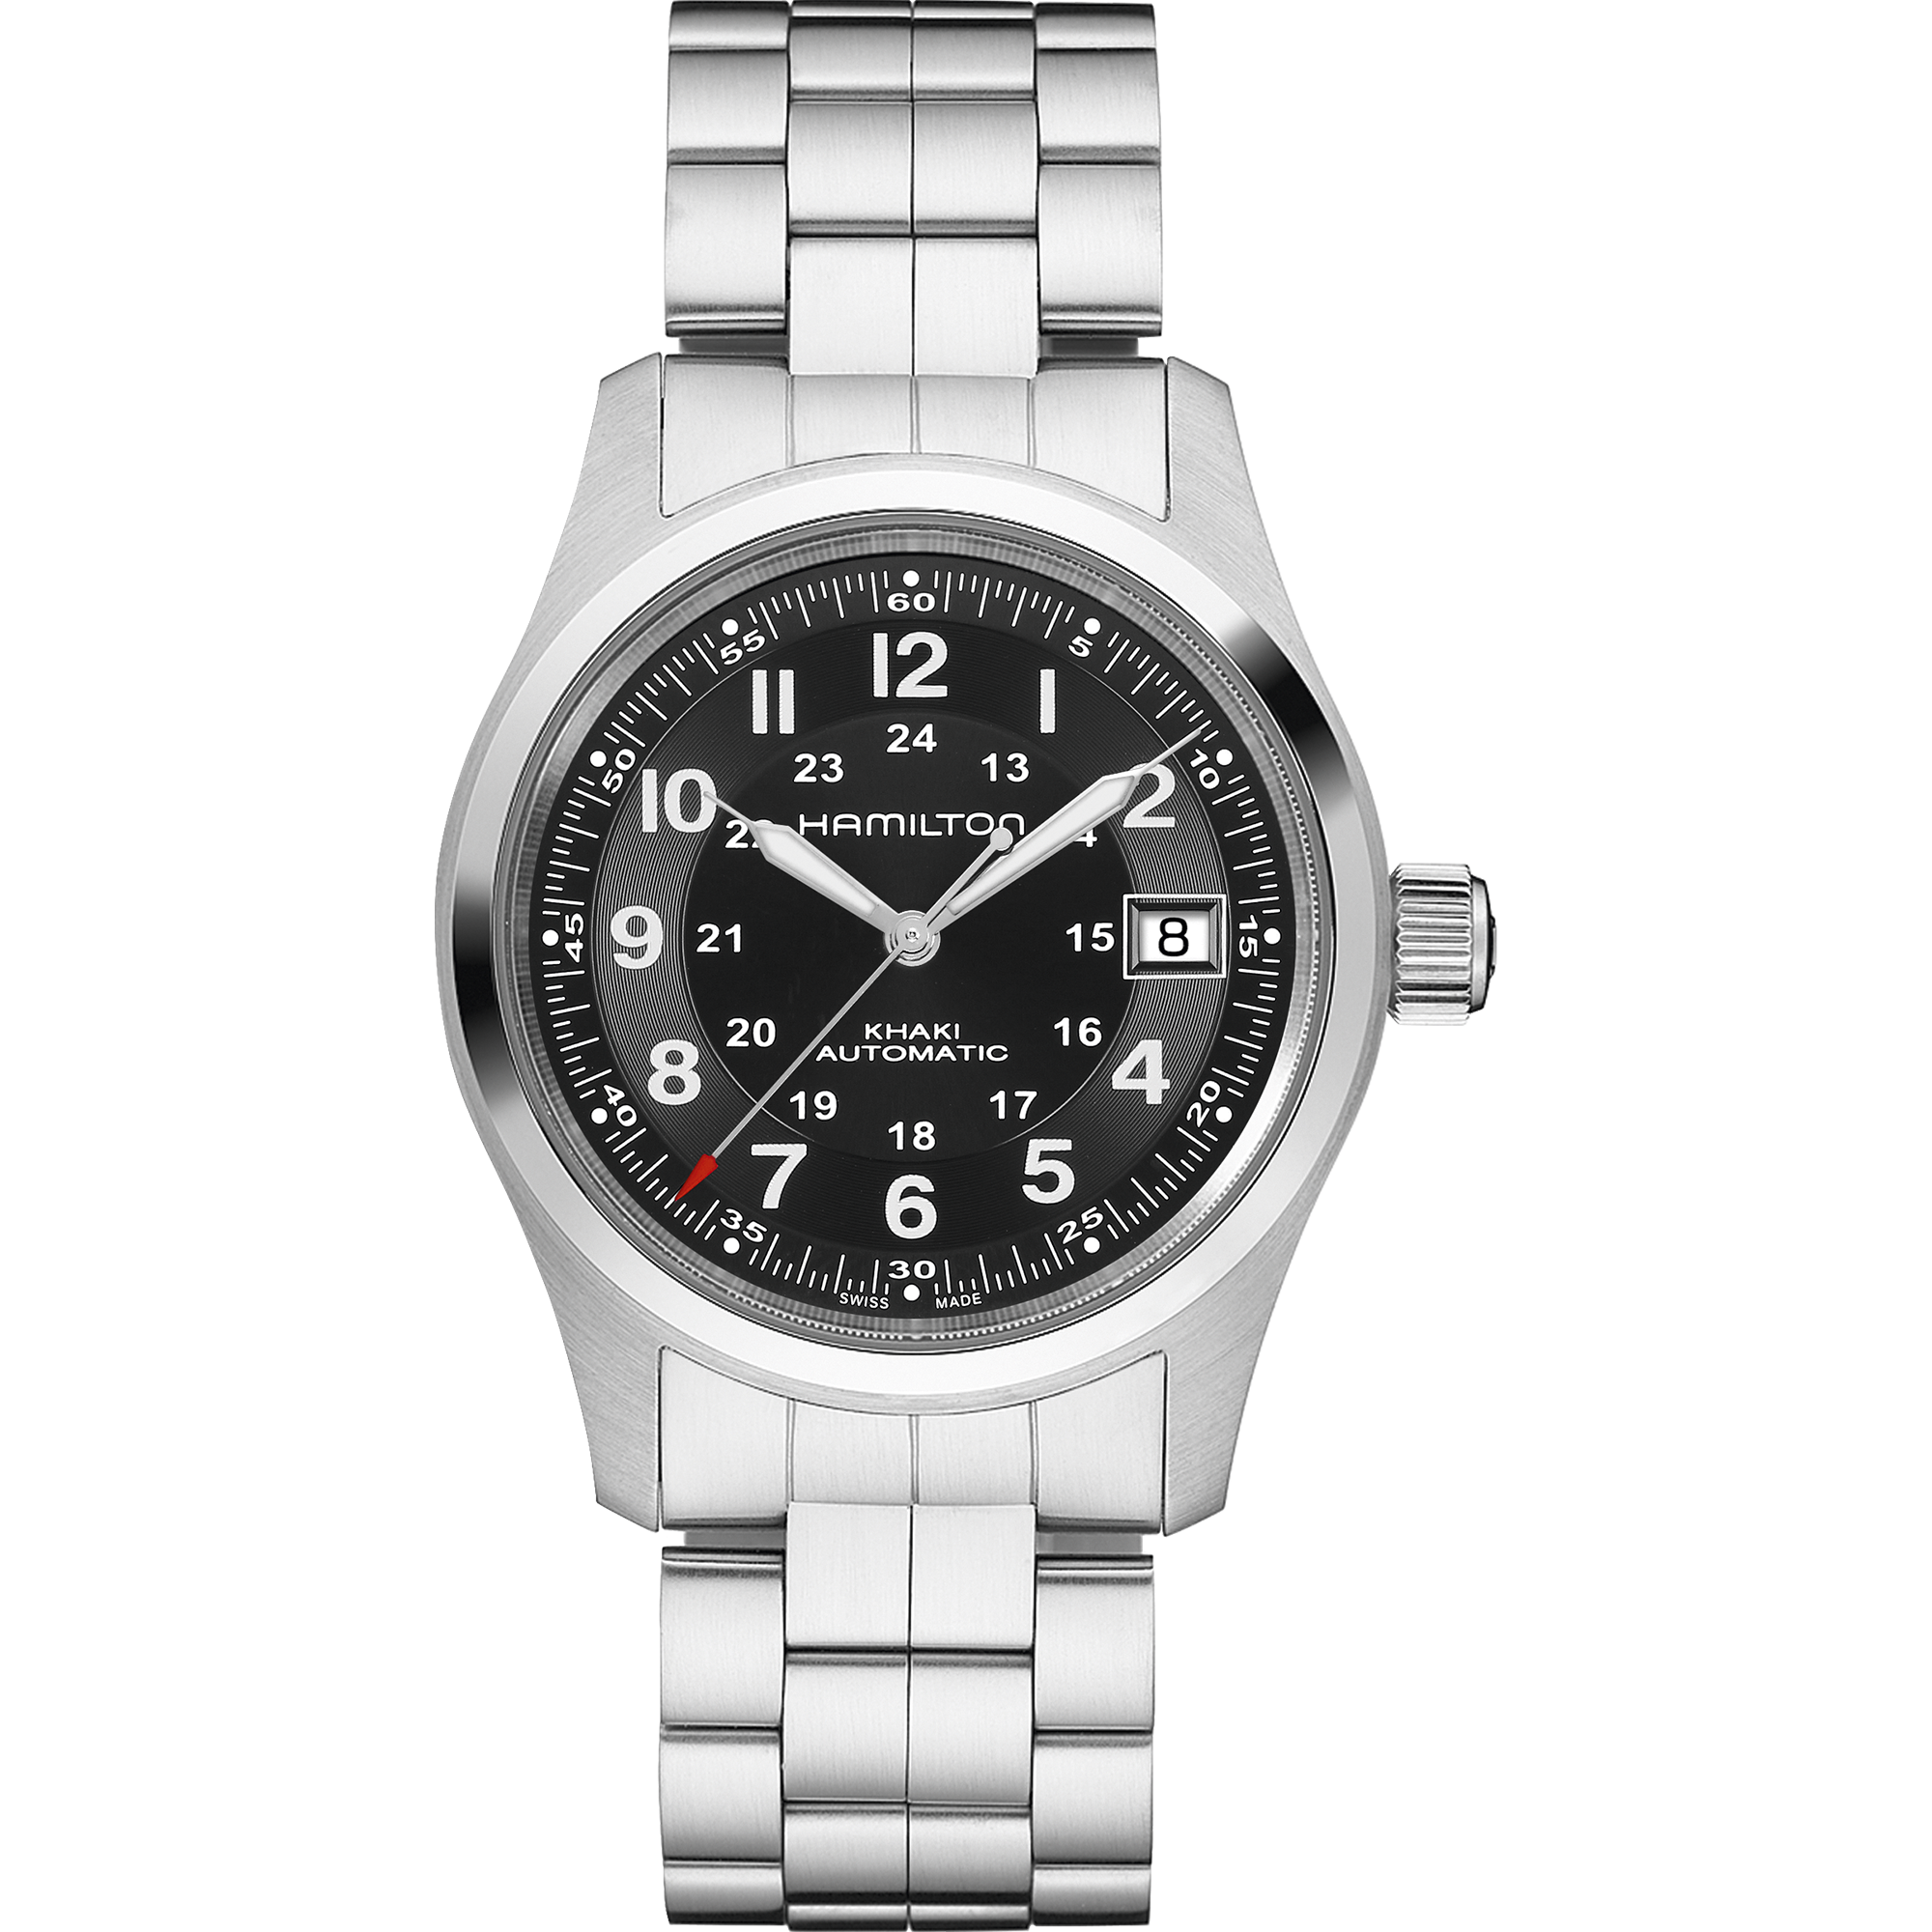 セール格安101523875 ハミルトン HAMILTON カーキ フィールド メカニカル 時計 腕時計 メンズ 手巻 ブラックPVD NATOベルト グレー 黒 H694090 未使用 カーキ